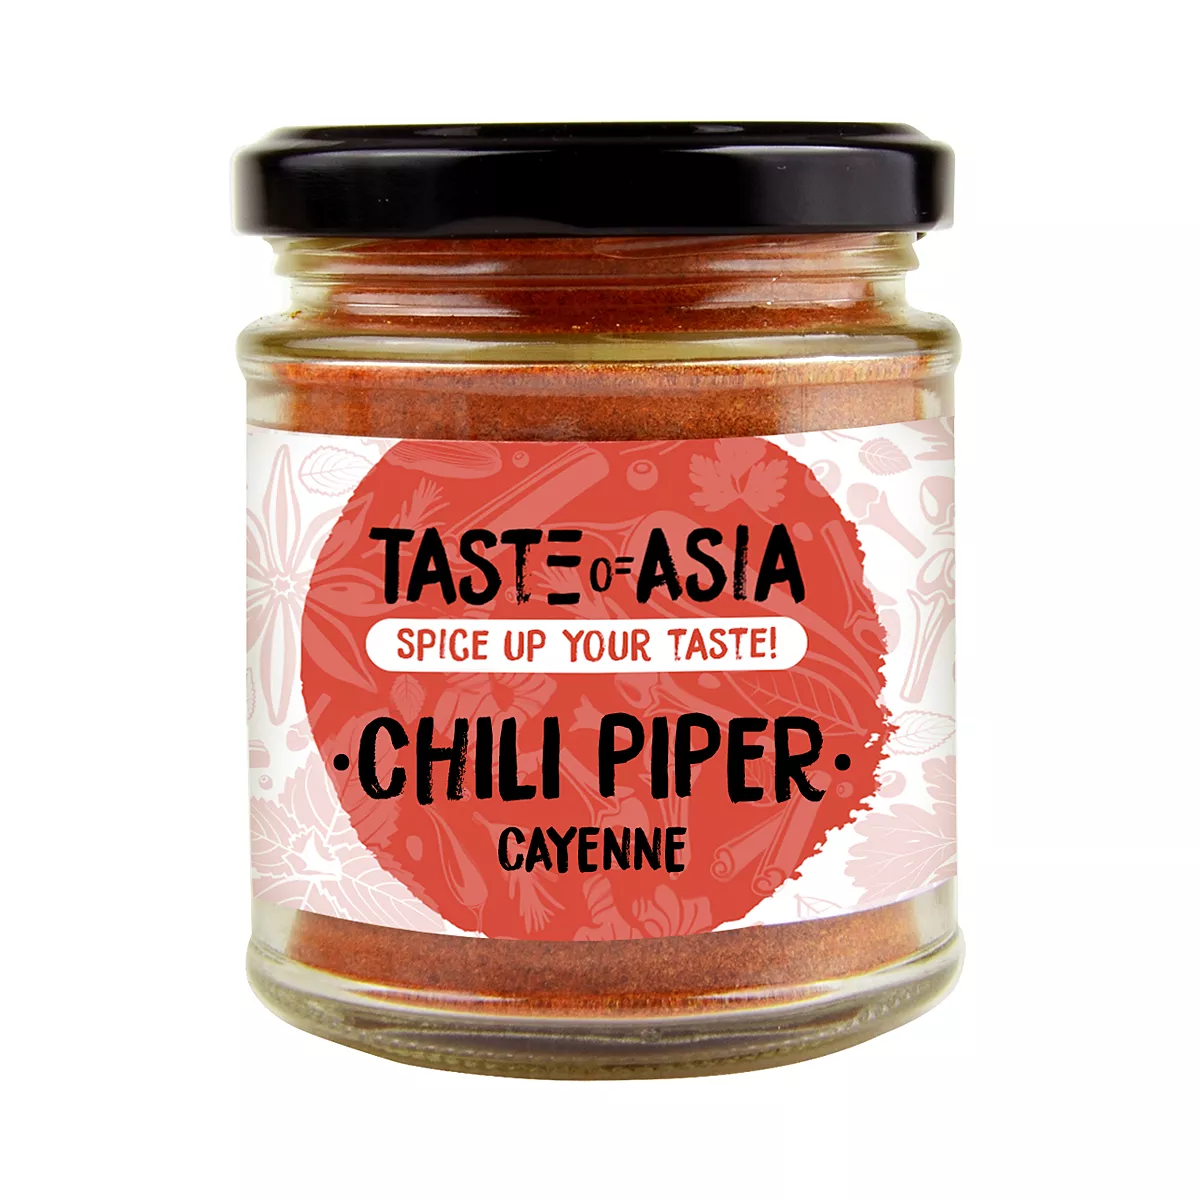 Chili Piper Cayenne TOA 70g, [],asianfood.ro